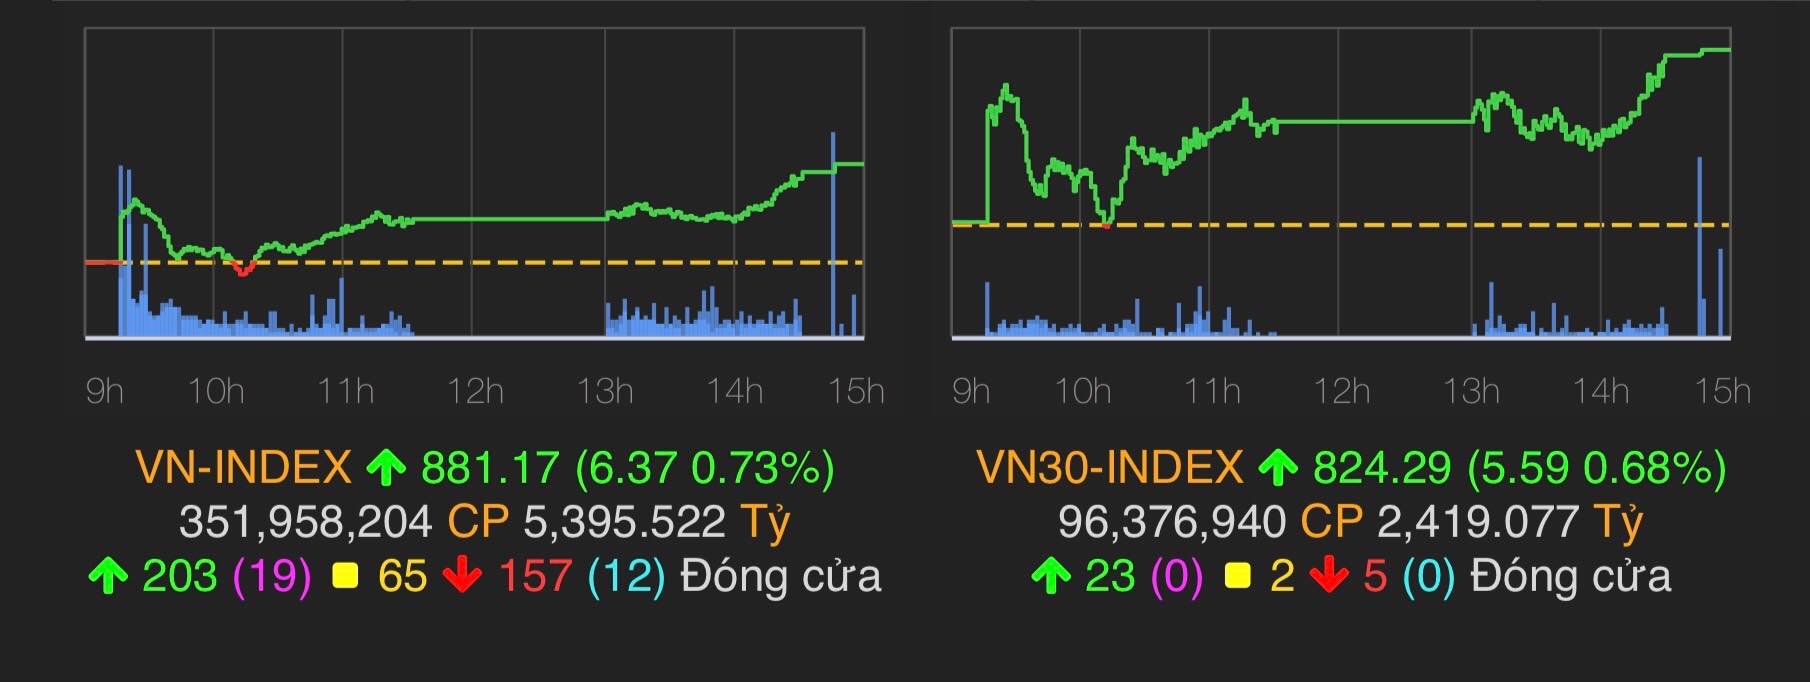 VN-Index tăng 6,37 điểm (0,73%) lên 881,17 điểm.